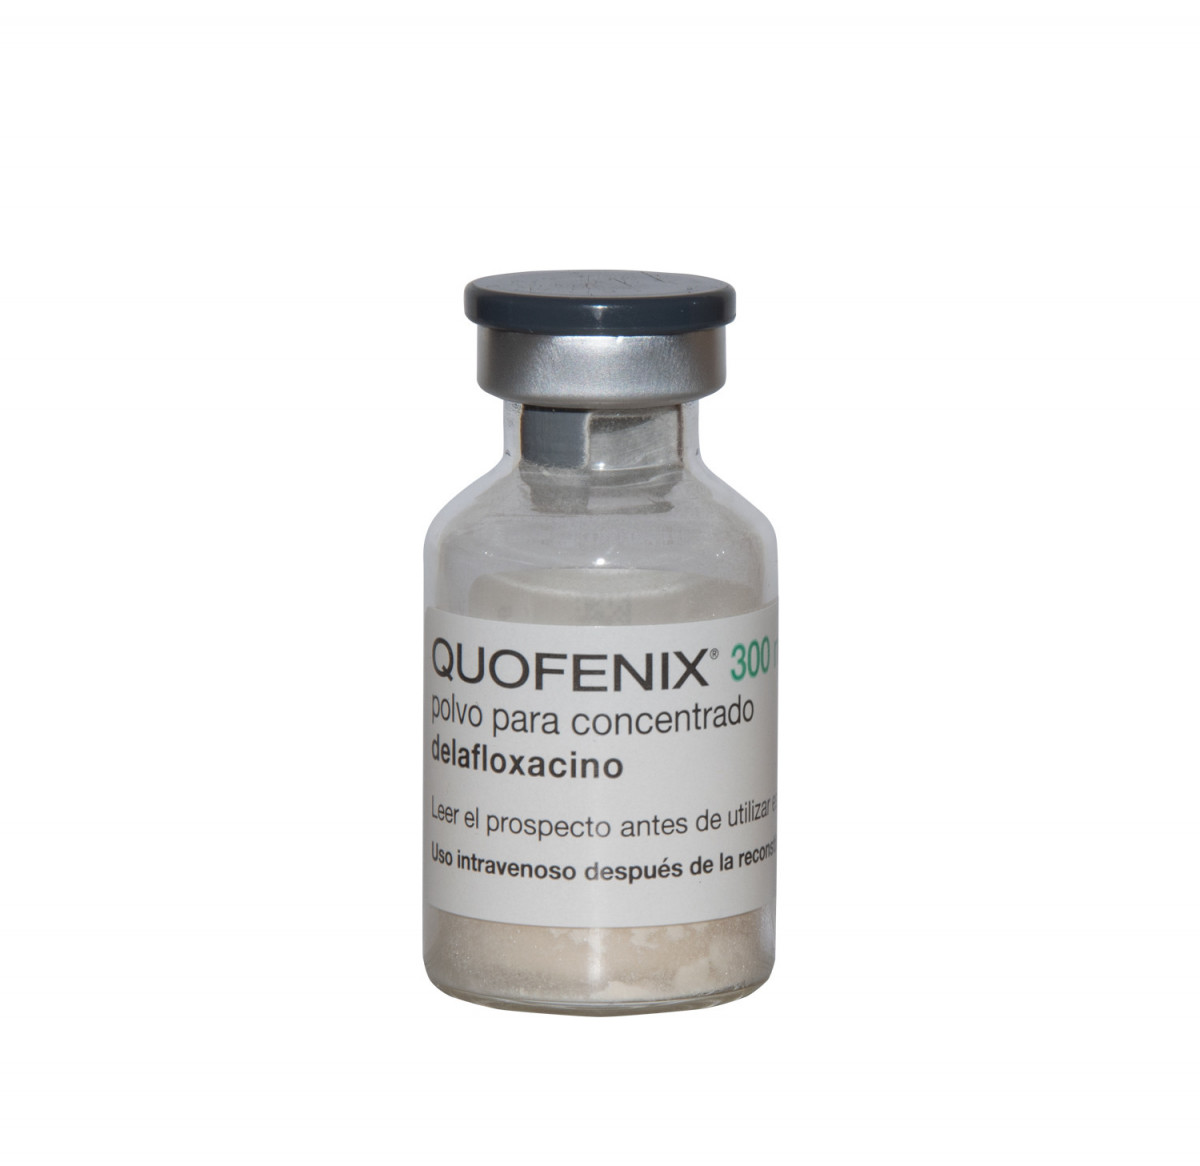 QUOFENIX 300 mg POLVO PARA CONCENTRADO PARA SOLUCION PARA PERFUSION, 10 viales fotografía de la forma farmacéutica.